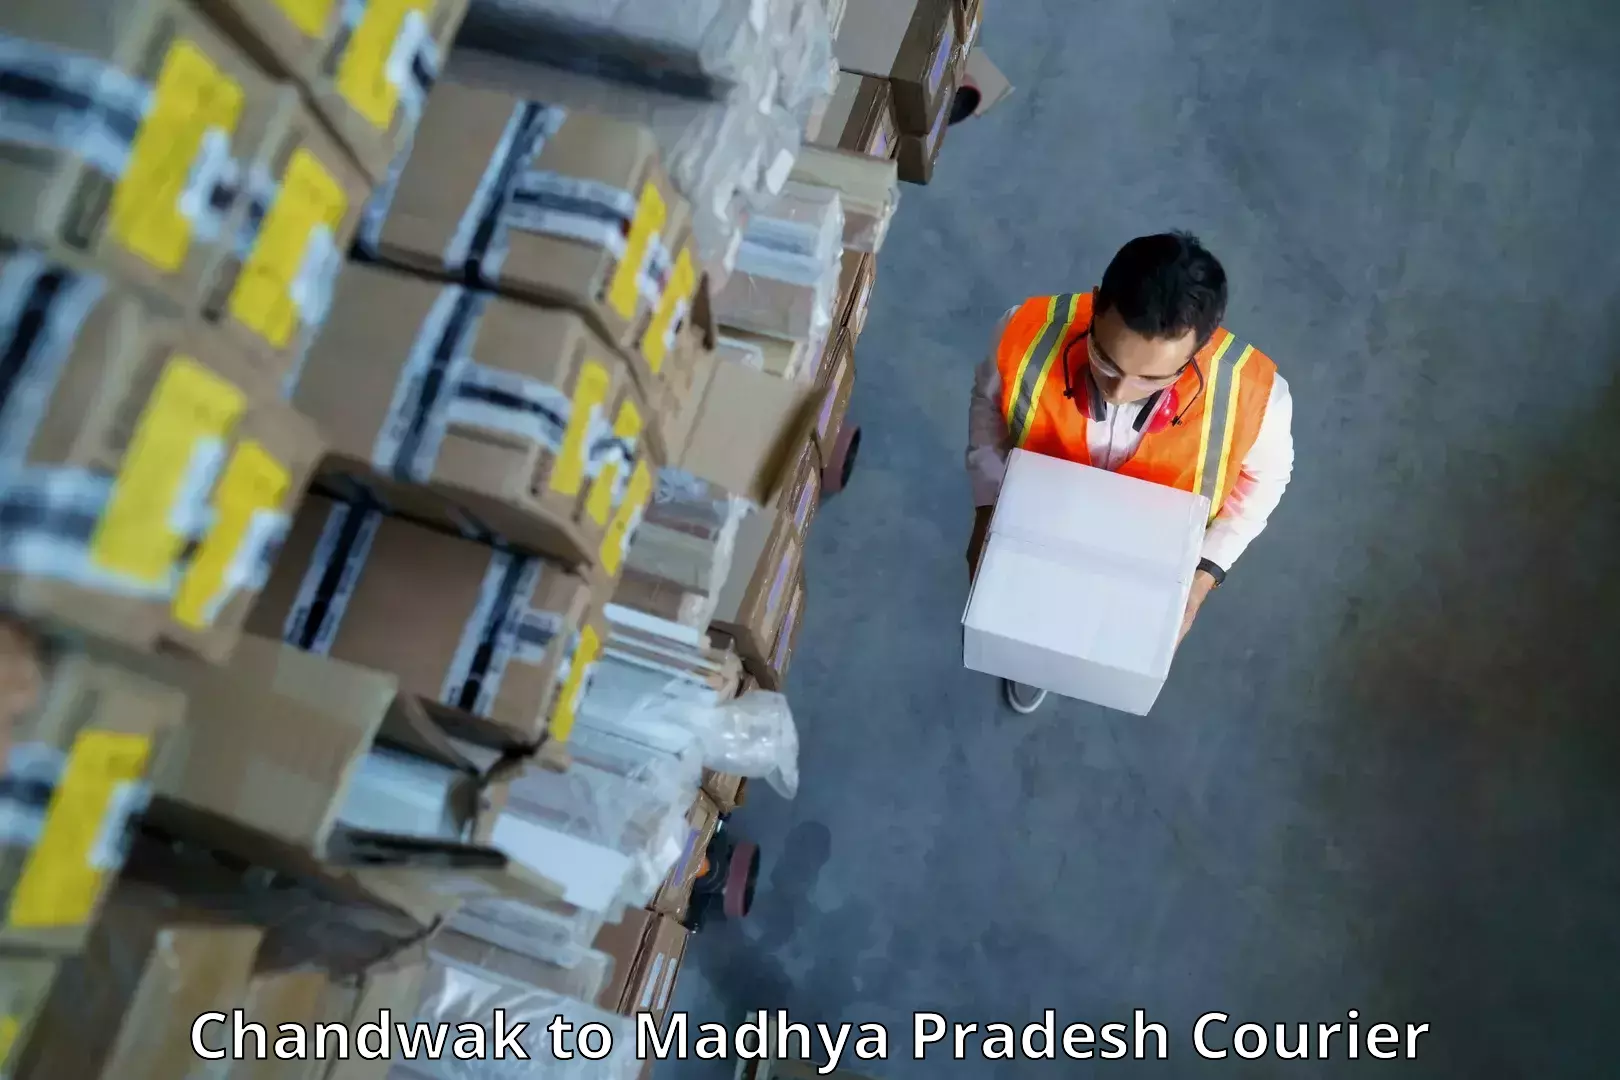 Multi-city courier Chandwak to Madhya Pradesh